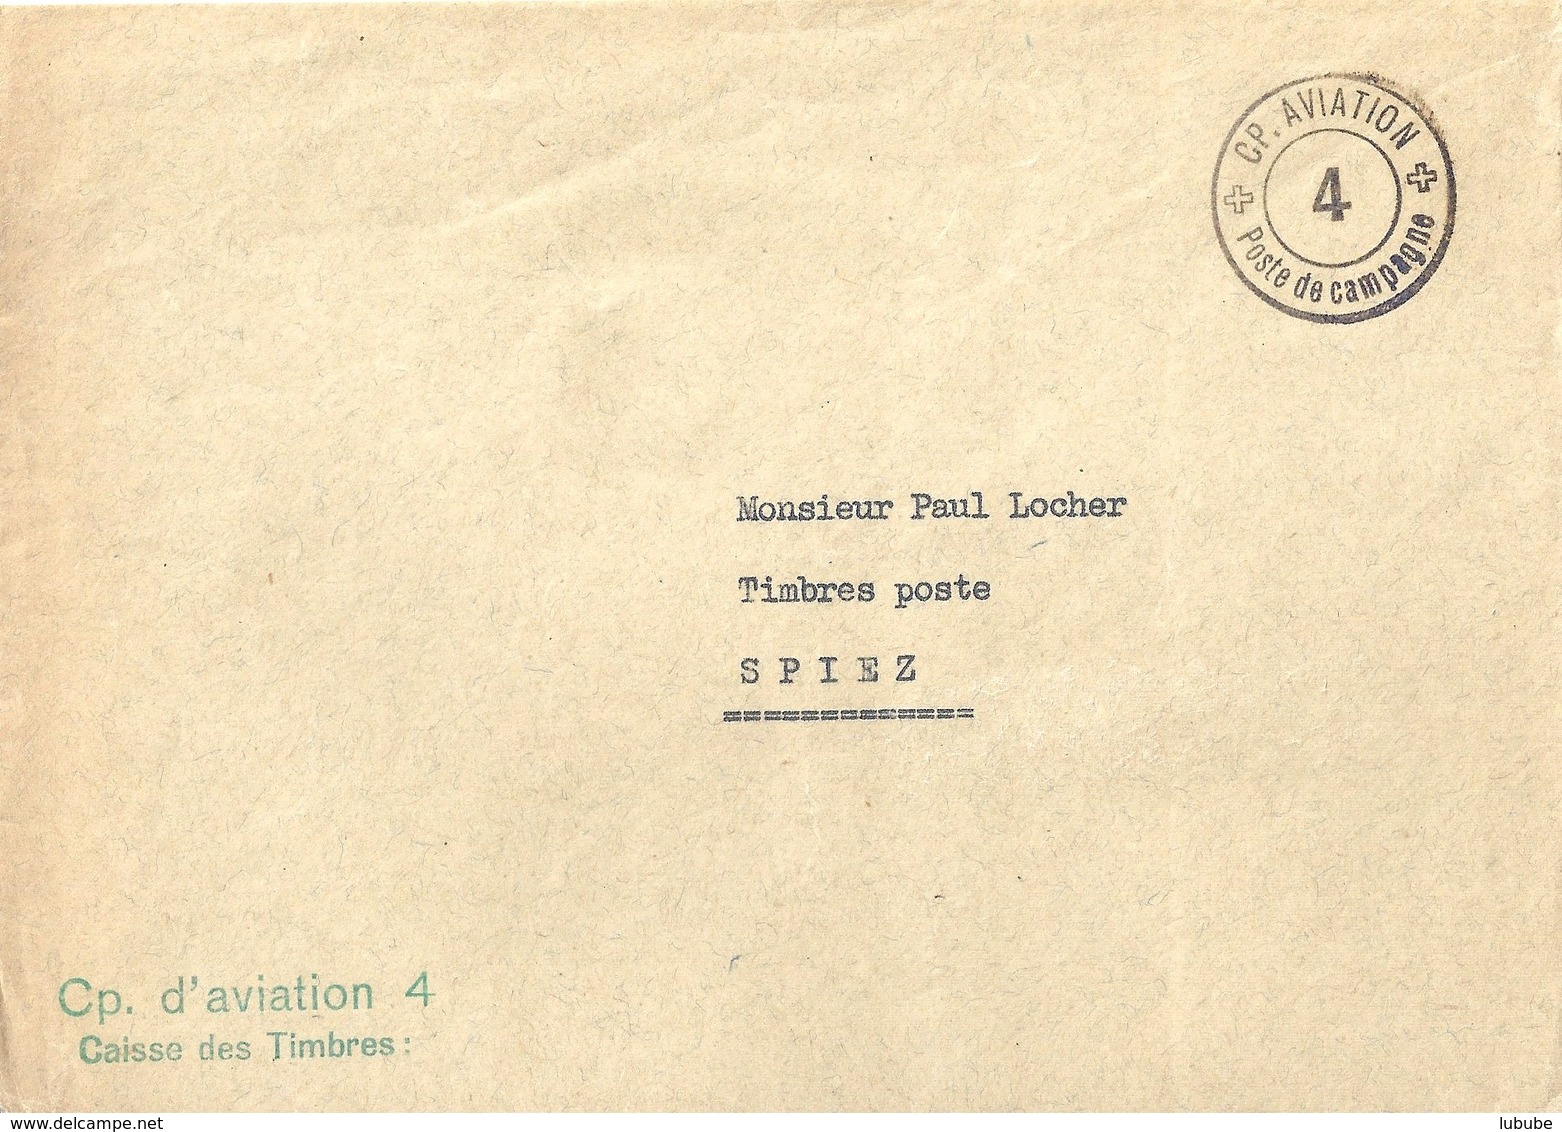 Feldpost Brief  "Cp.Aviation 4 Poste De Campagne" - Spiez             Ca. 1940 - Postmarks